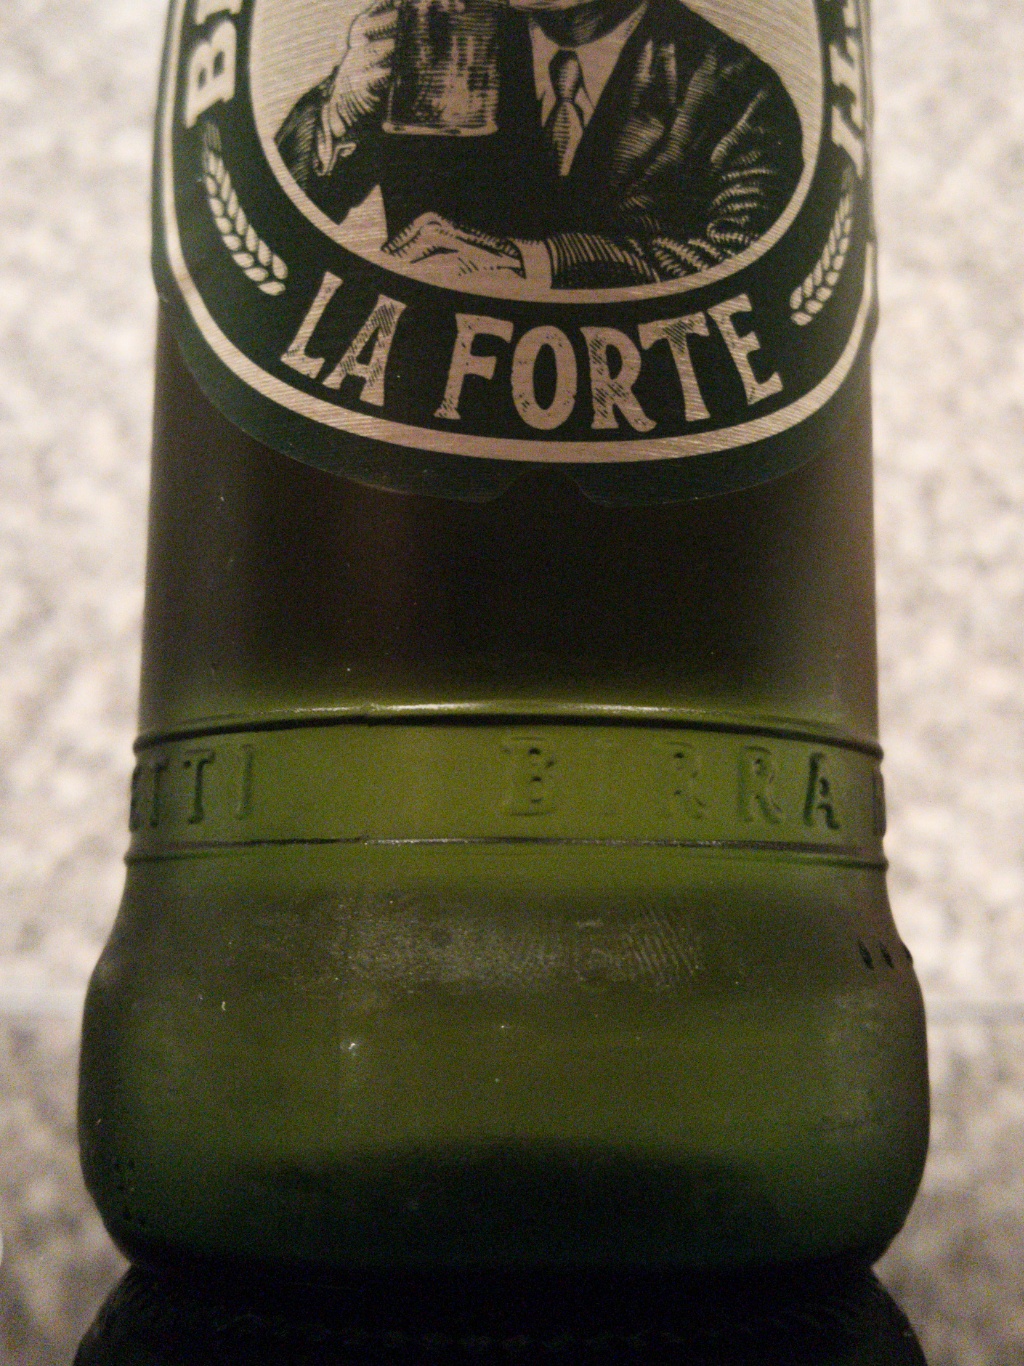 Moretti La Forte